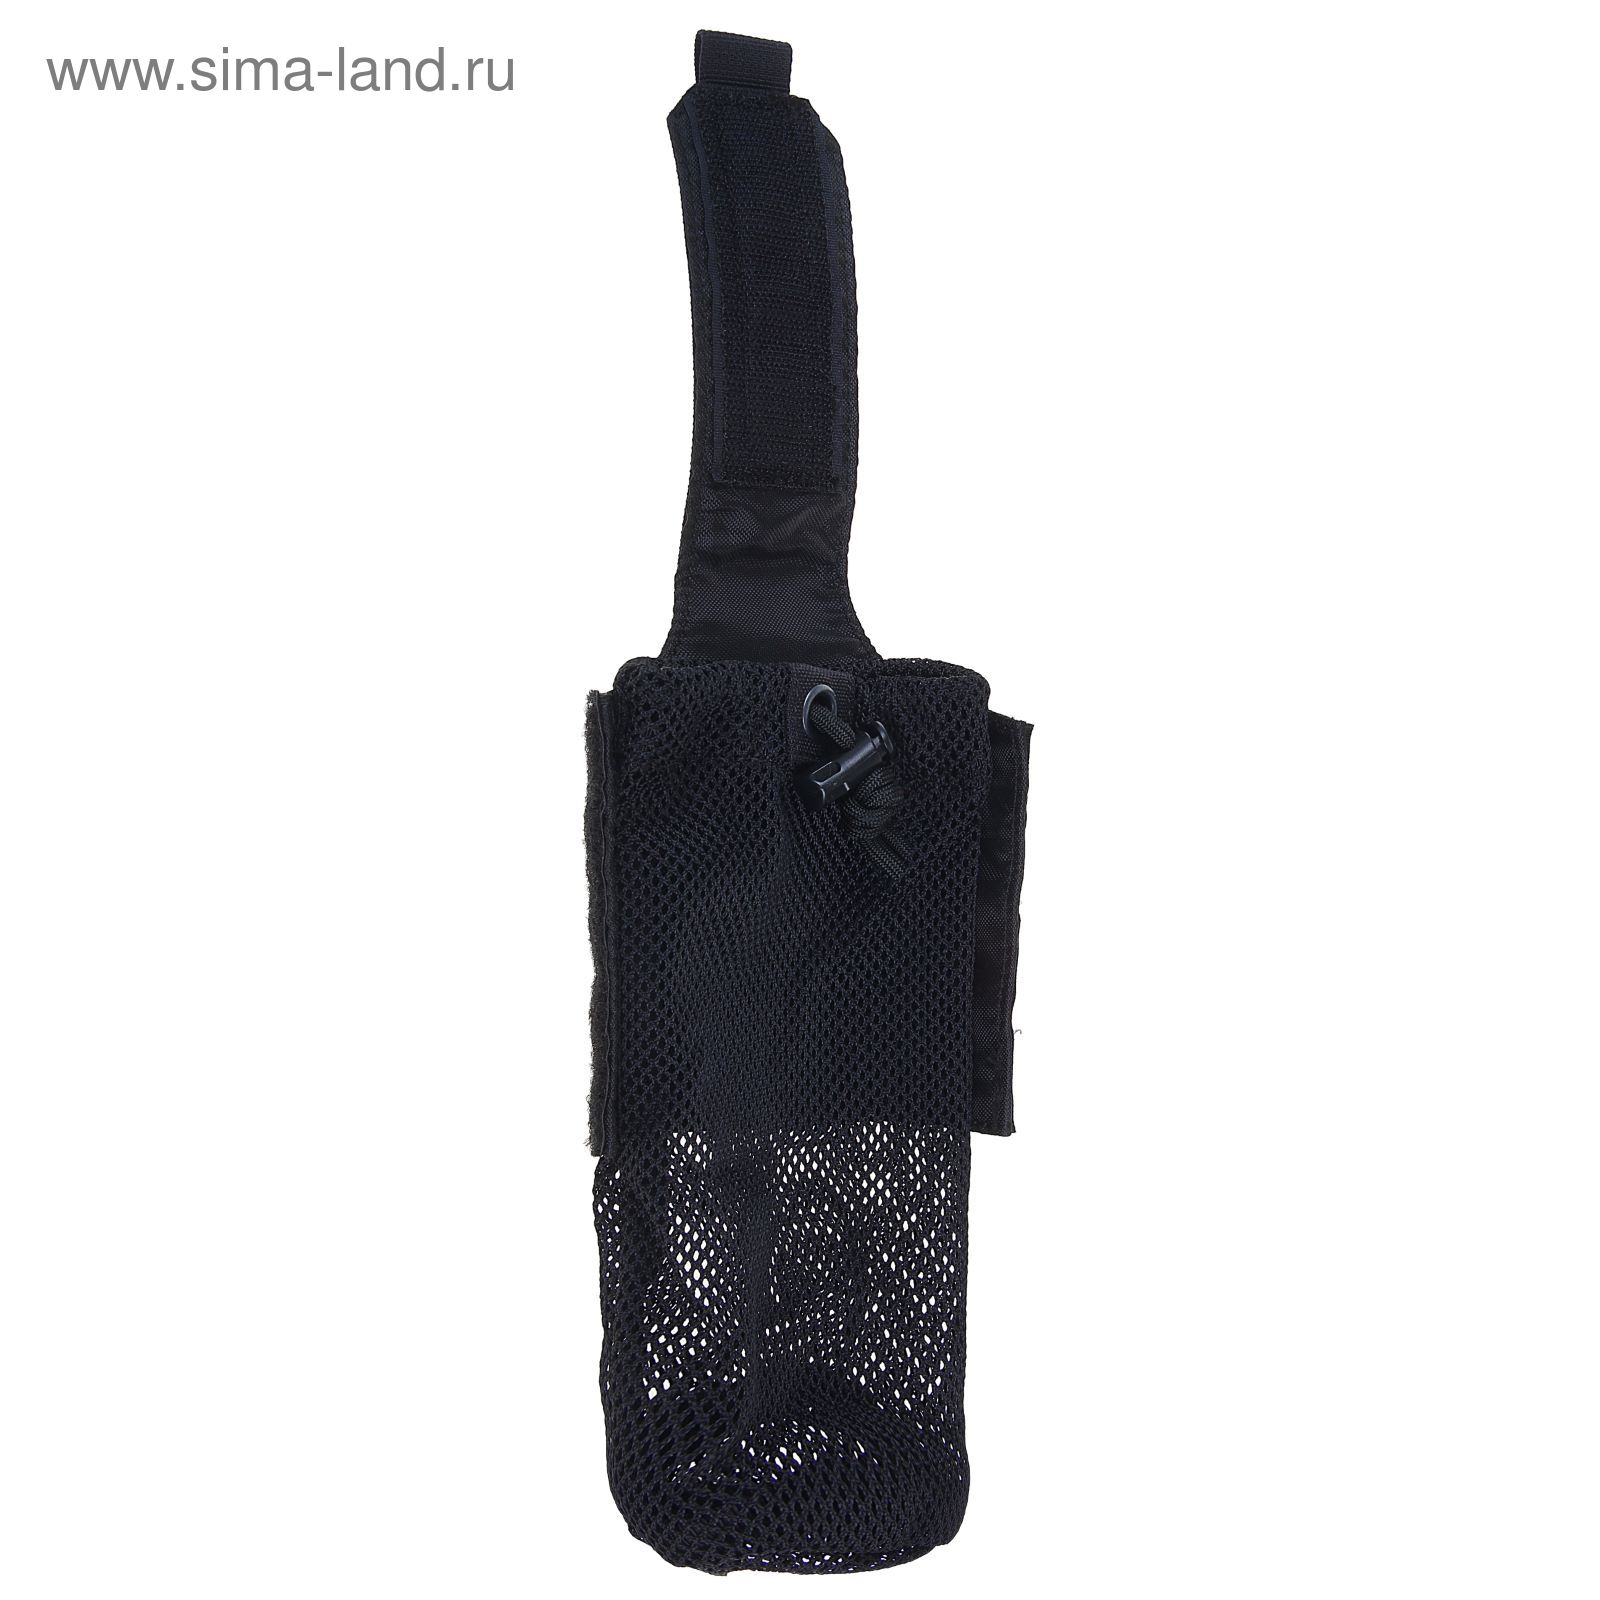 Подсумок Folding water bottle bag Black BP-17-BK, 0,5 л